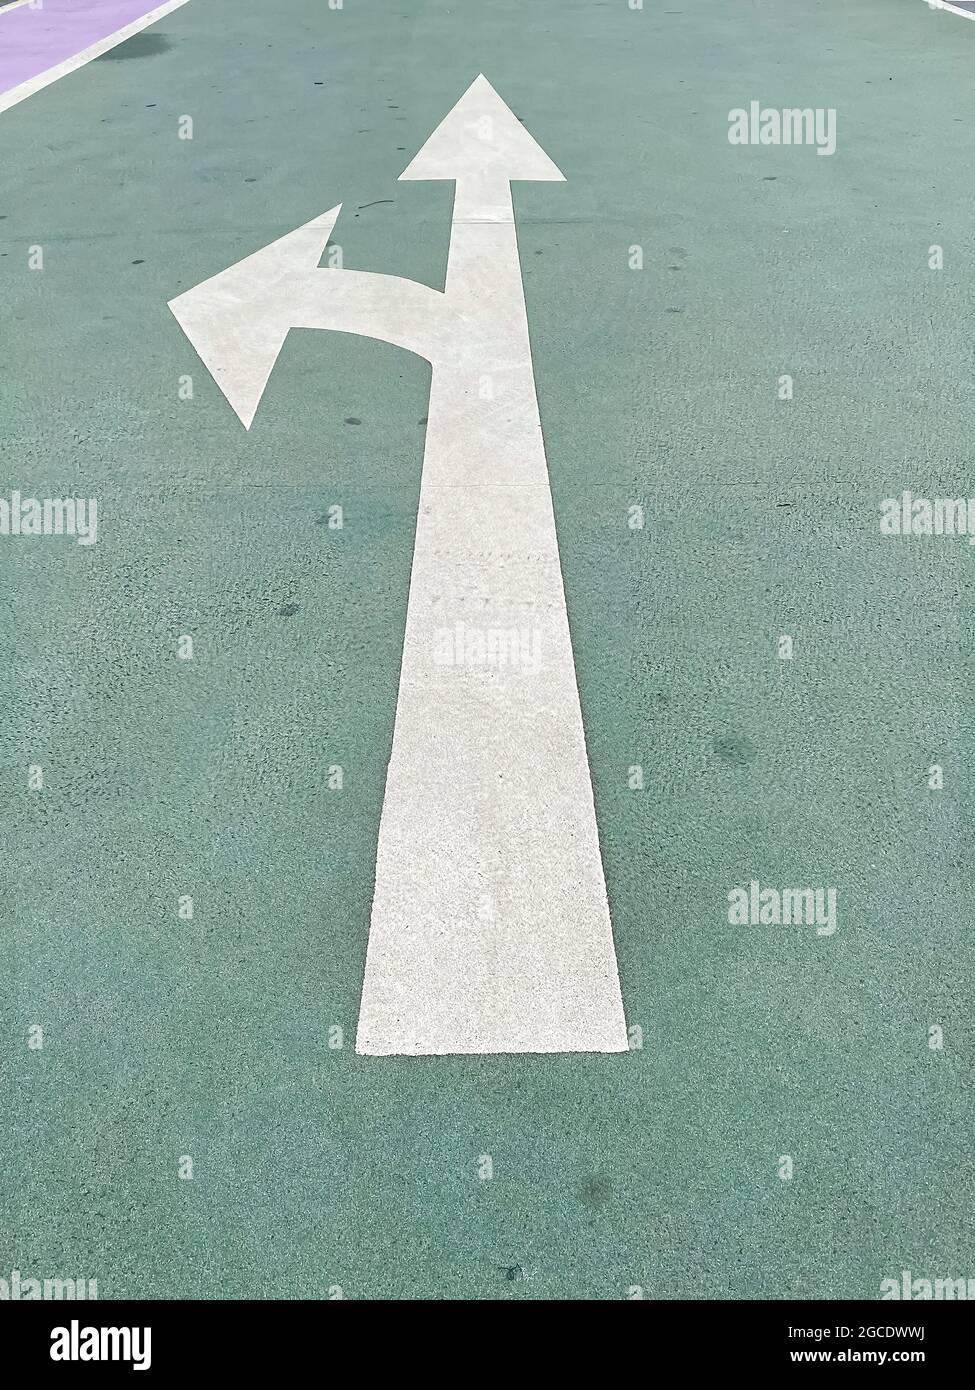 Einfach ein Abbiegekonzept treffen: Weißer isolierter Pfeil auf grünem Bürgersteig, der die Richtung geradeaus oder links zeigt Stockfoto